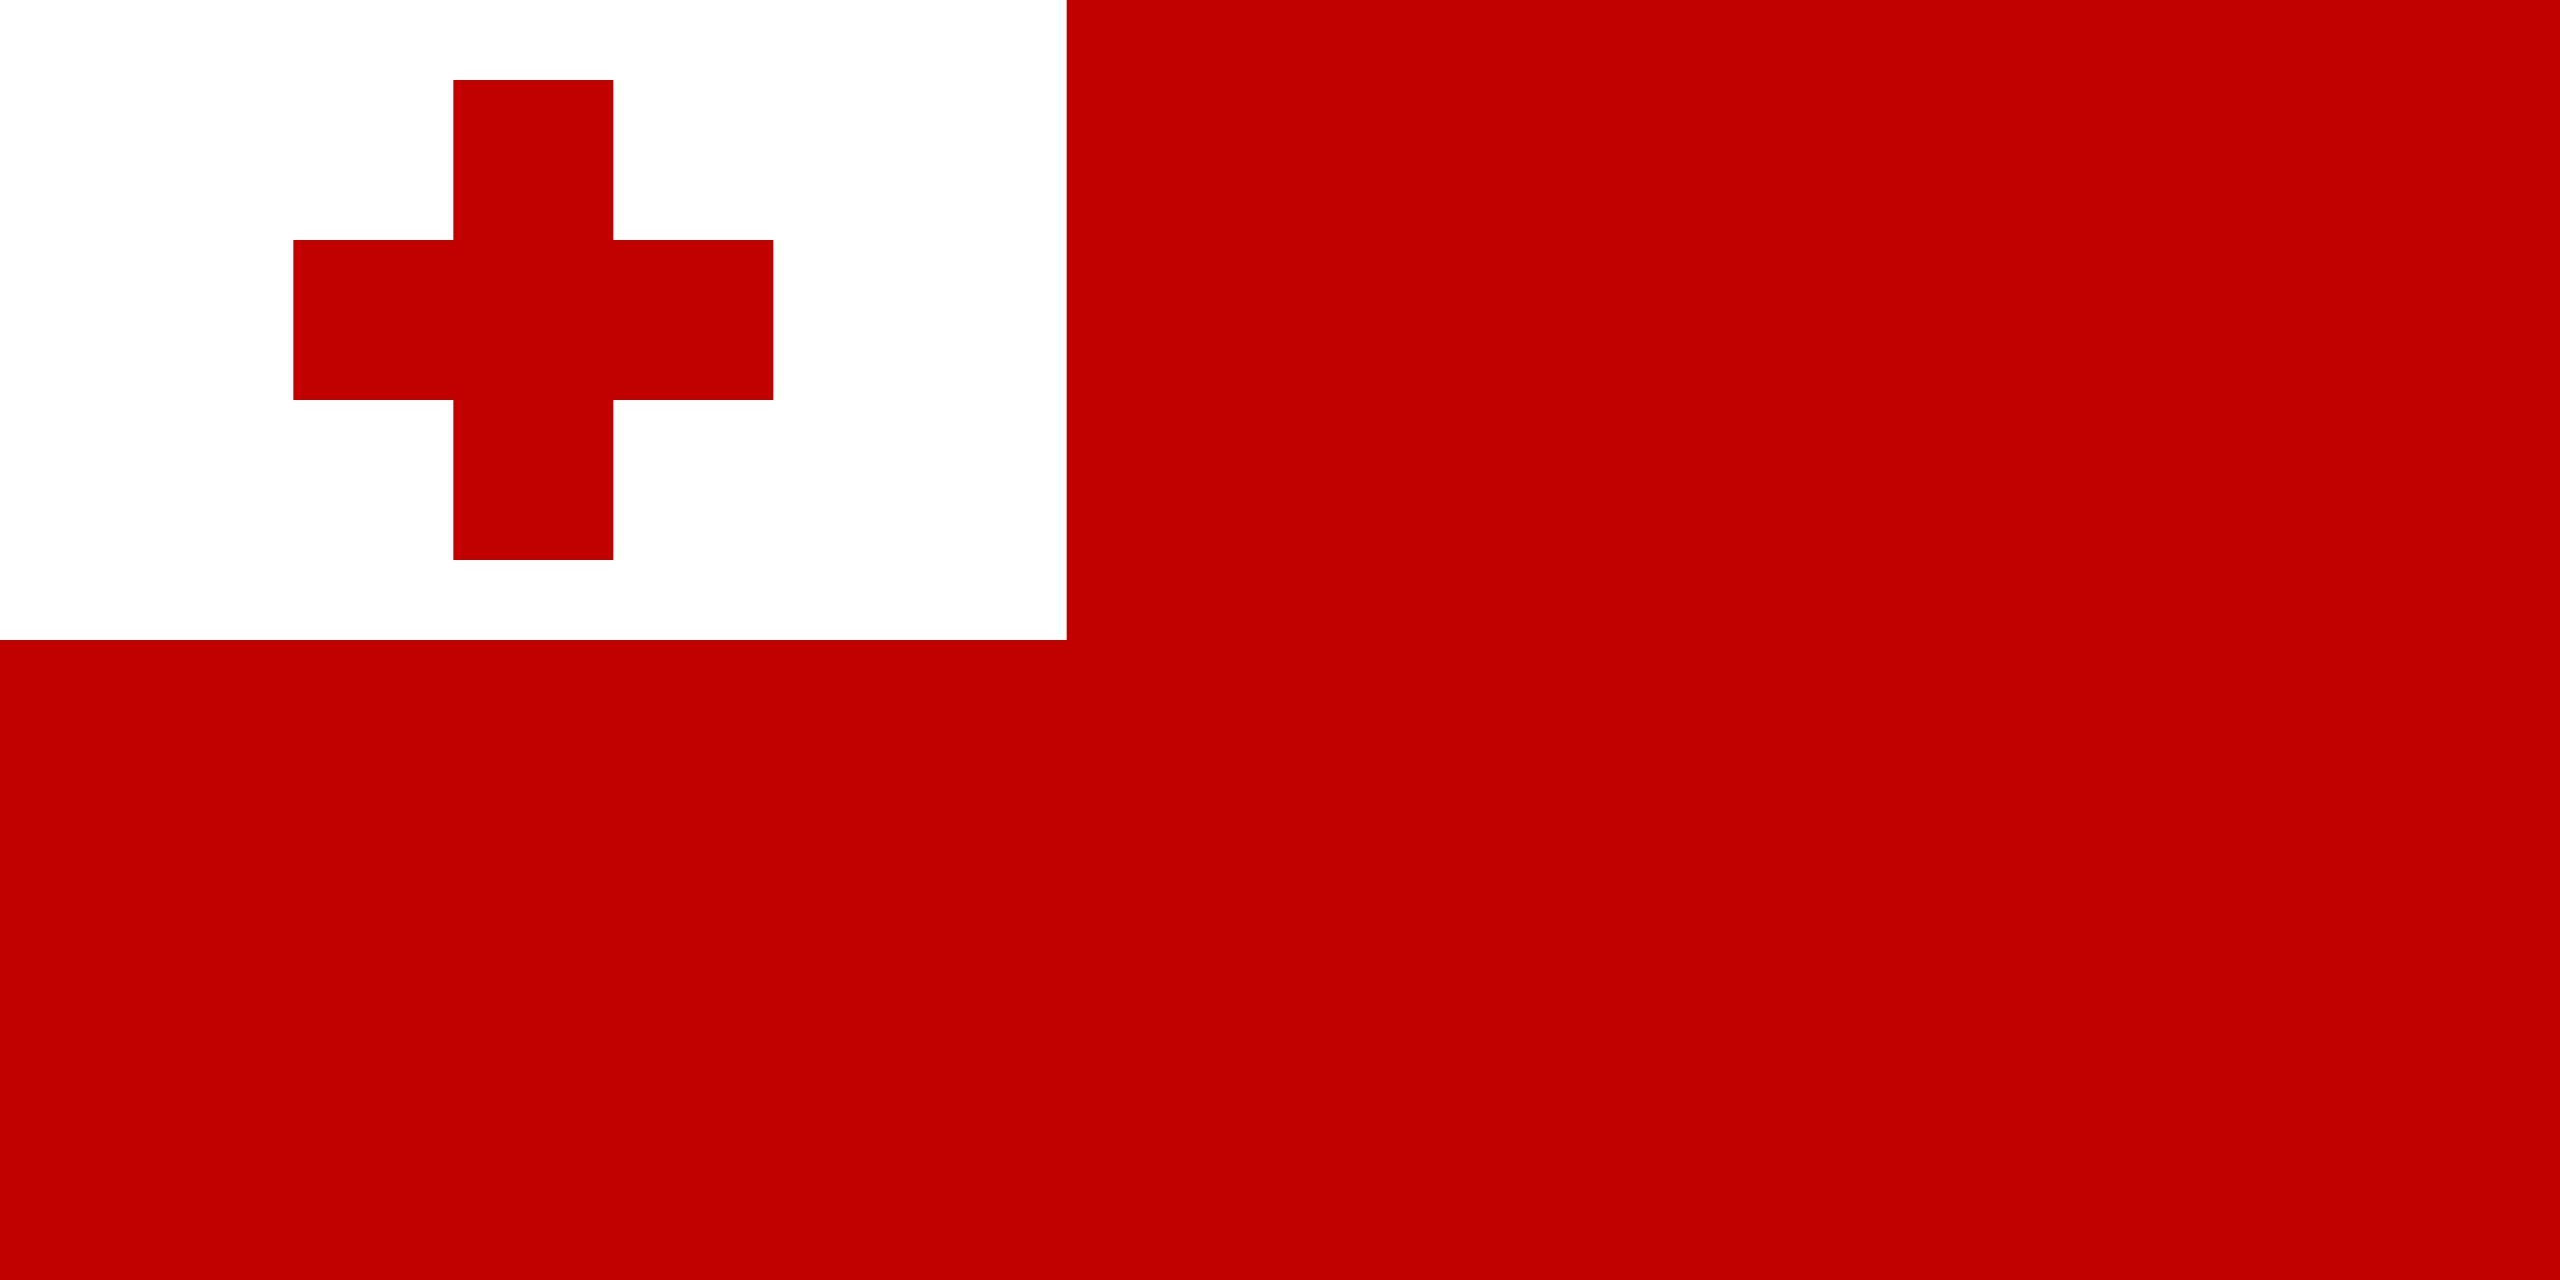 Resultado de imagem para Tongo bandeira